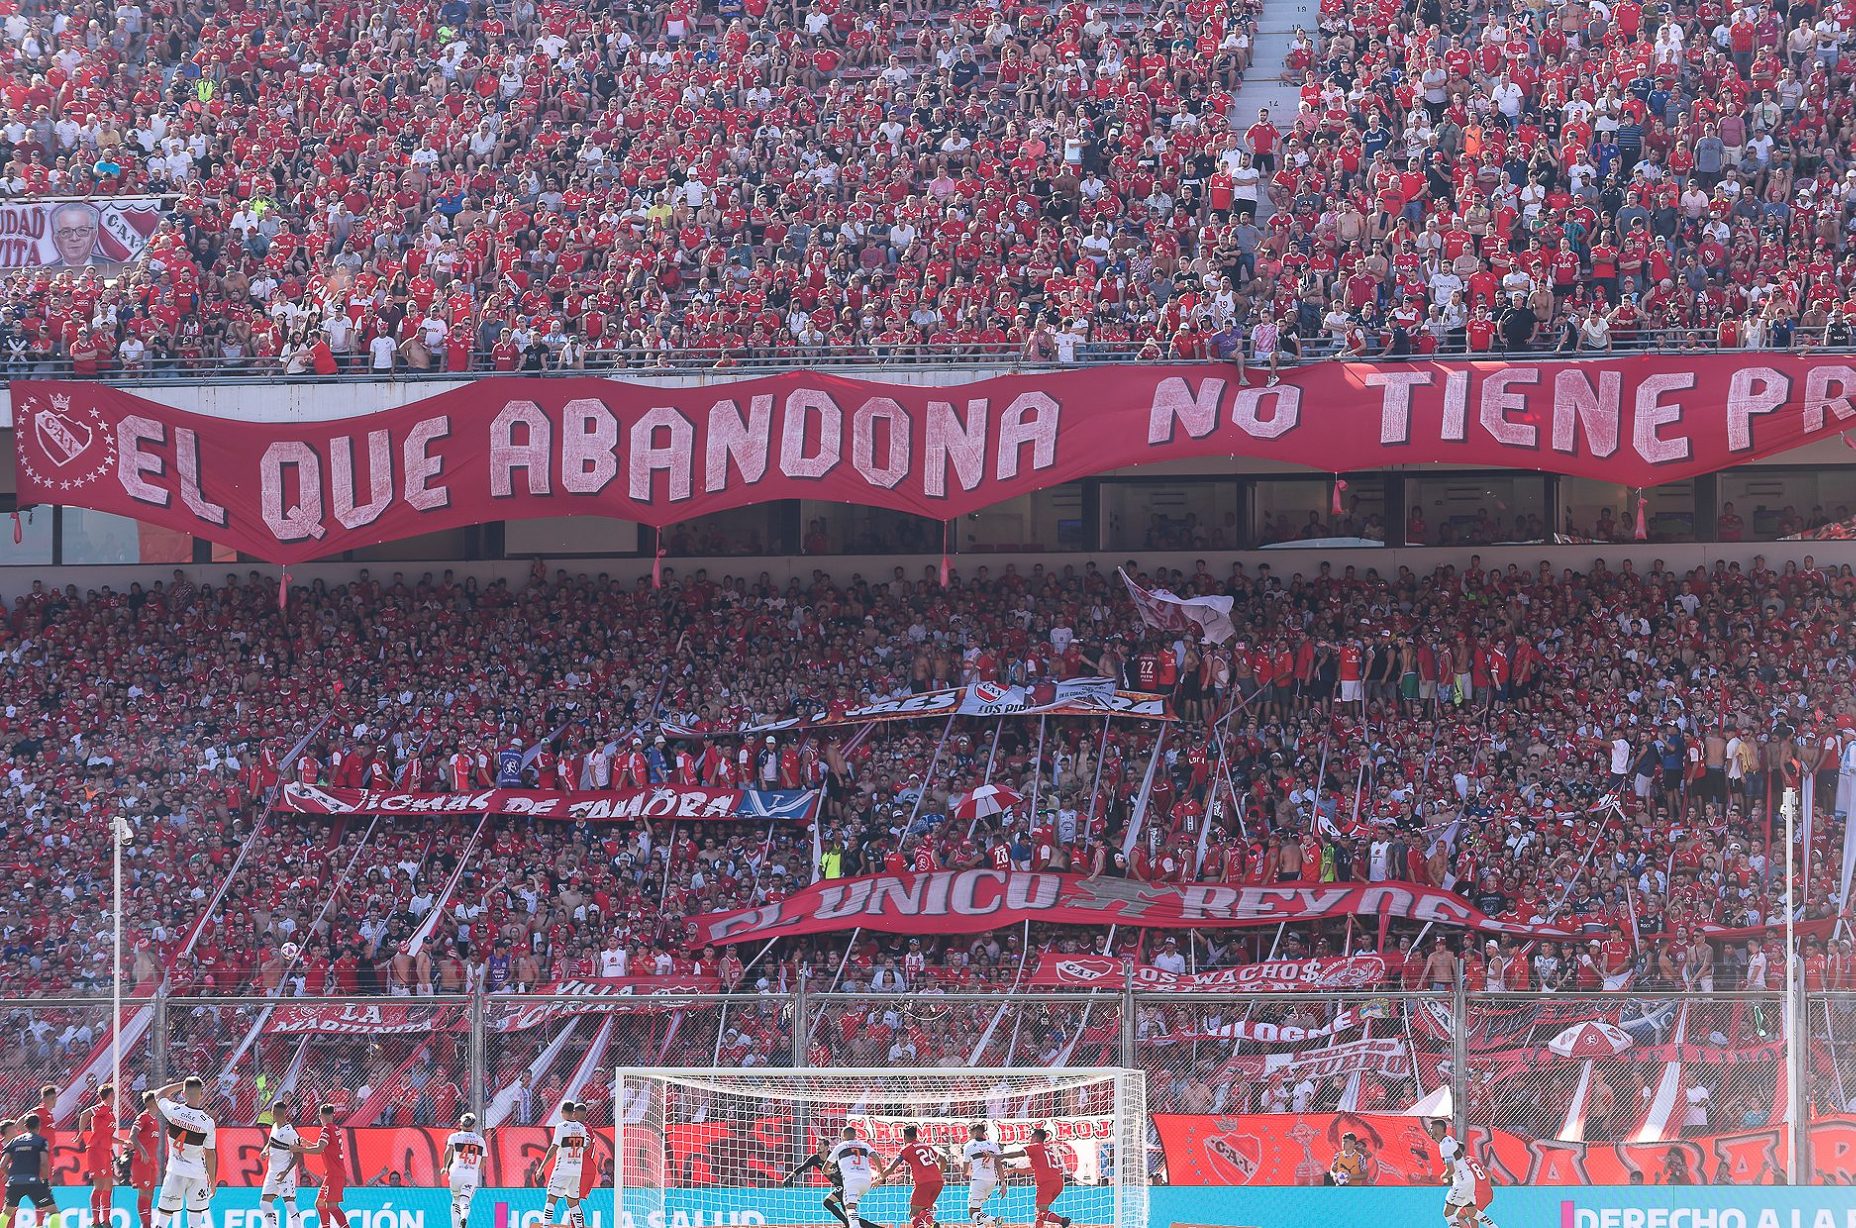 Presidente do Independiente renuncia cargo, em meio a uma das maiores crises do clube - Foto: Reprodução/Twitter @Independiente